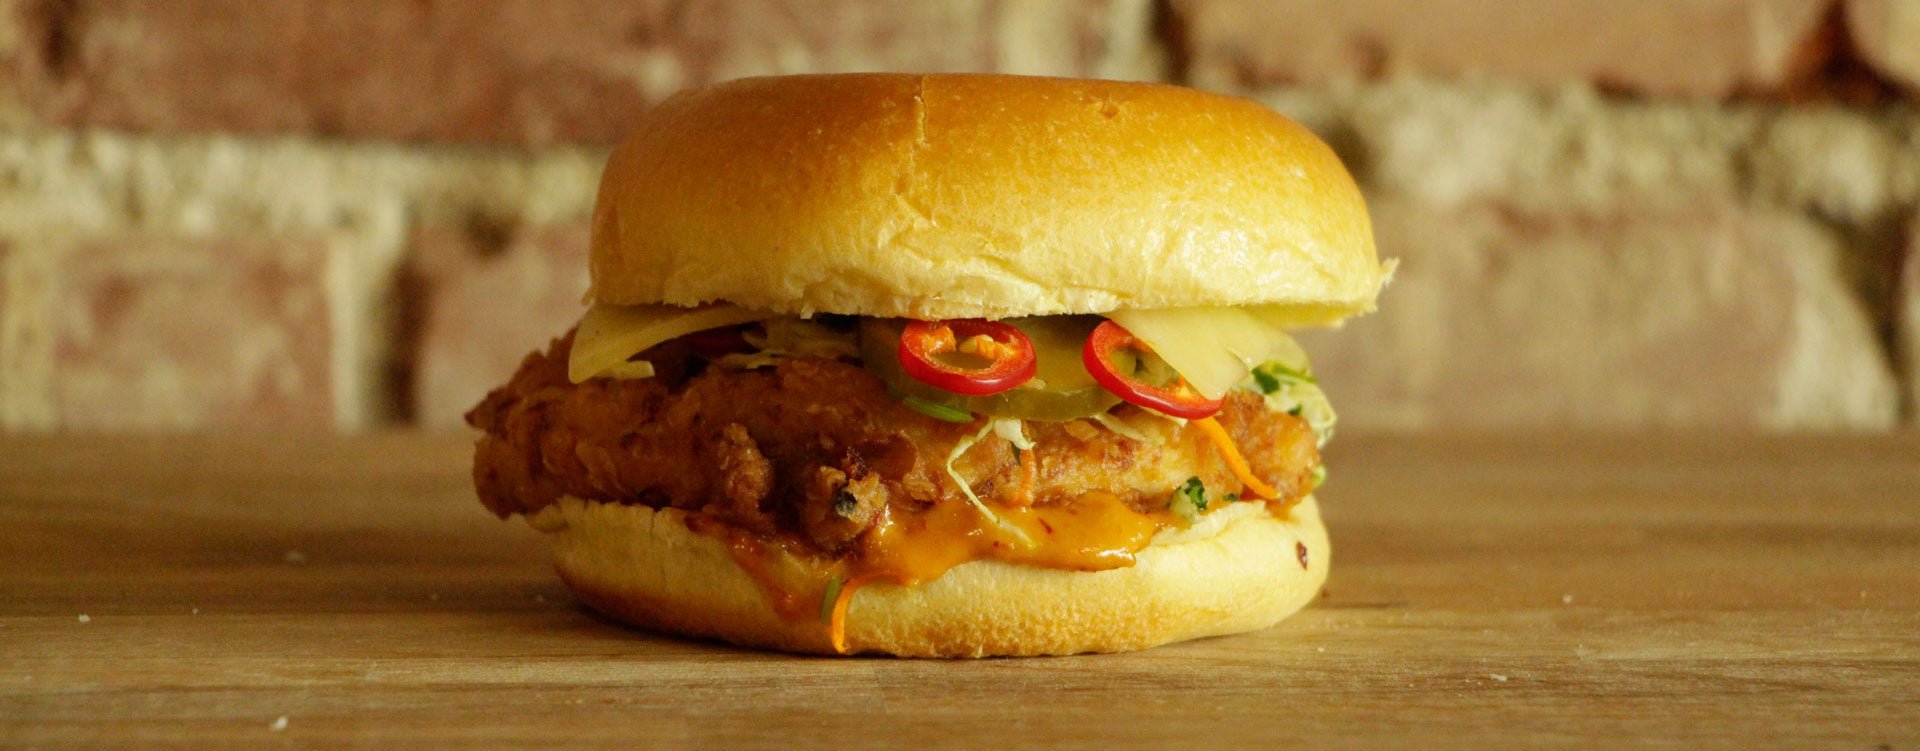 Photograph of a chicken sandwich